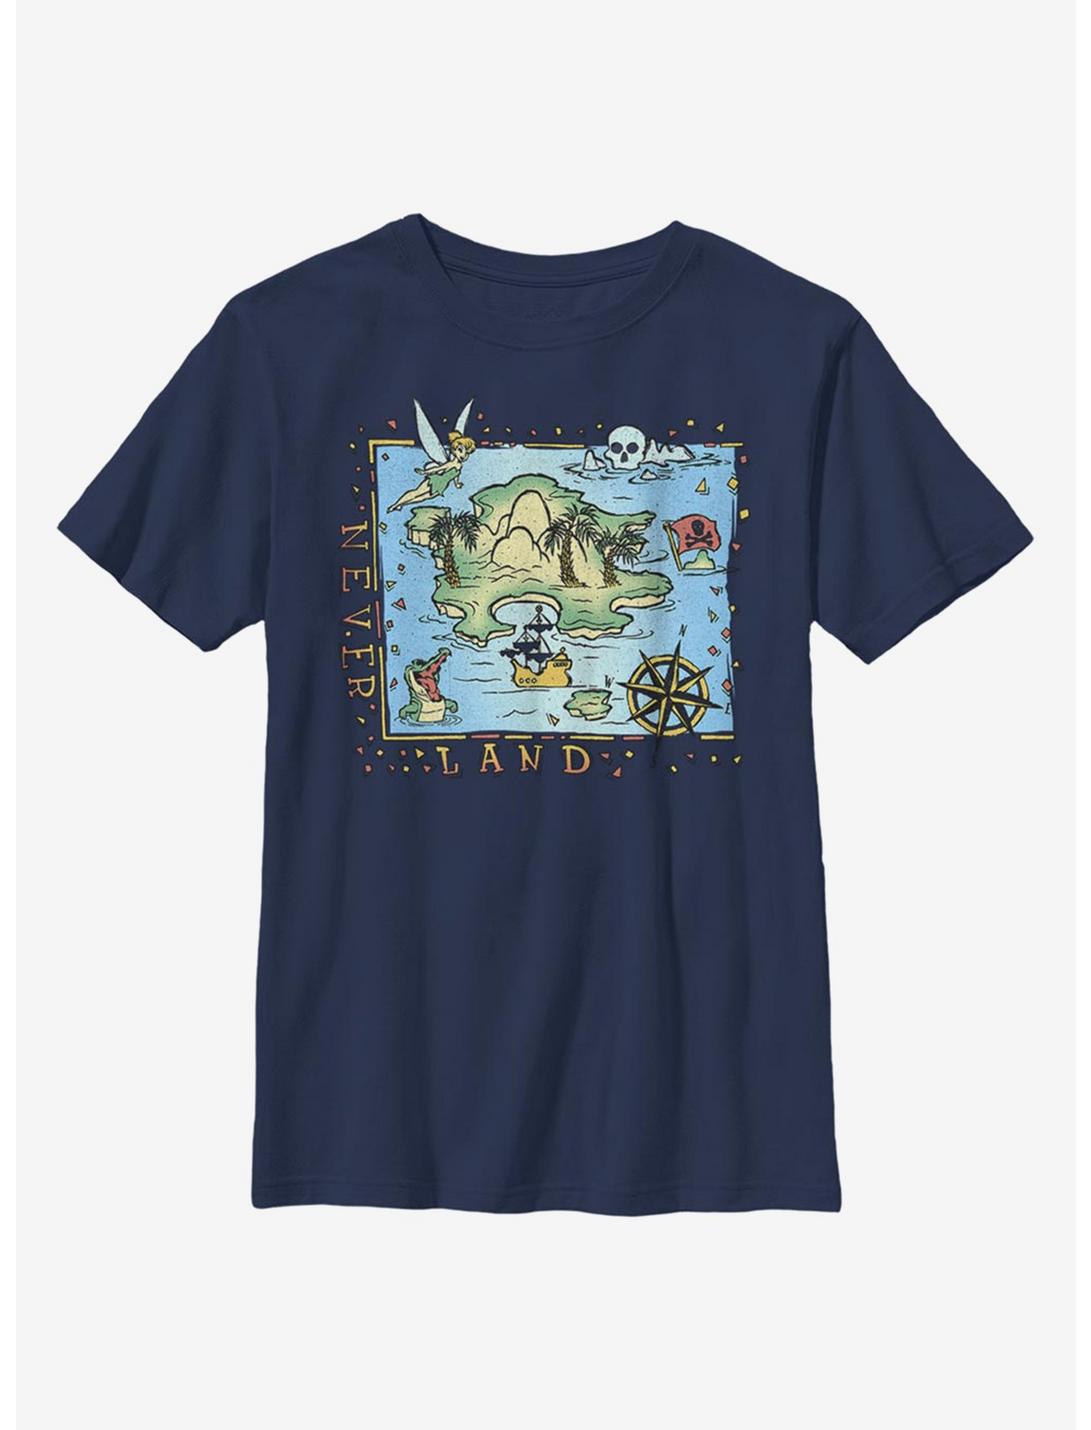 Disney Peter Pan Never Land Coast Youth T-Shirt, NAVY, hi-res